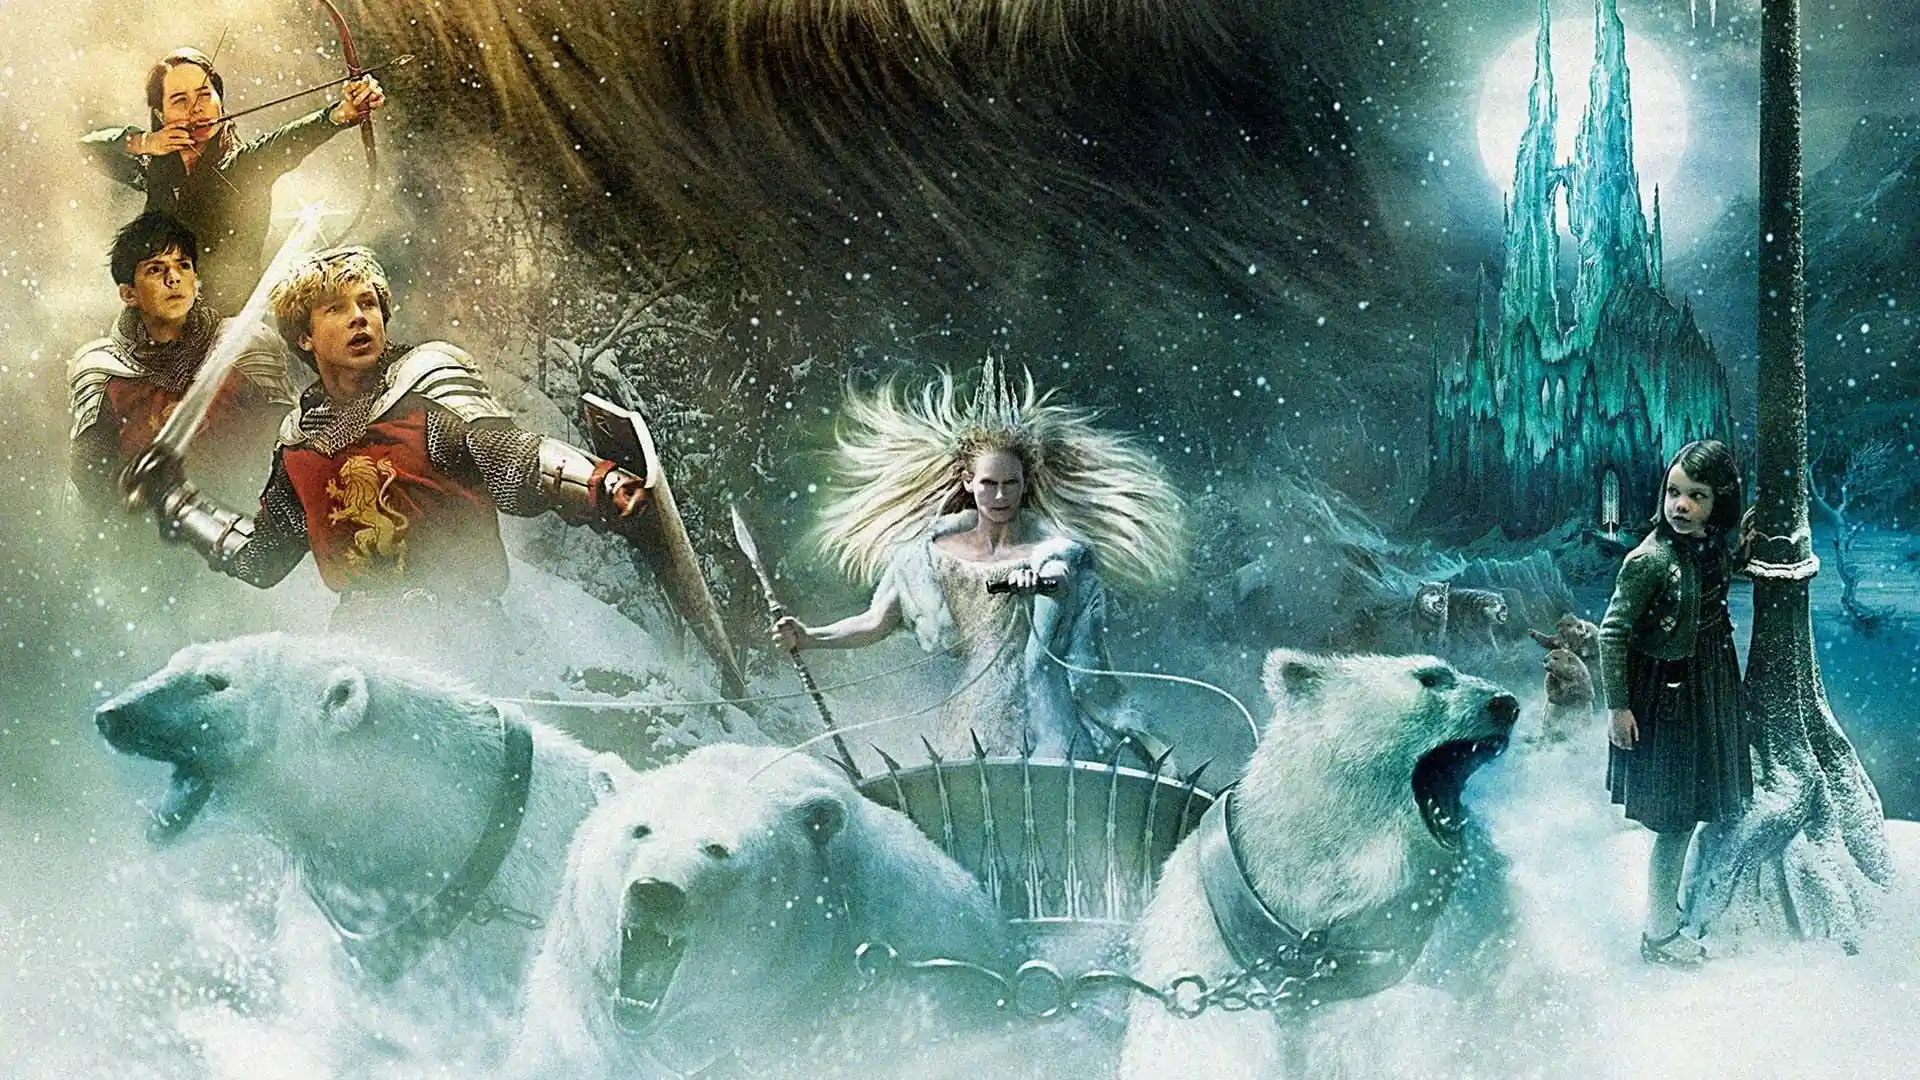 Imagen promocional de la primera película de la saga de Las crónicas de Narnia en la que se ve a los cuatro hermanos y la bruja